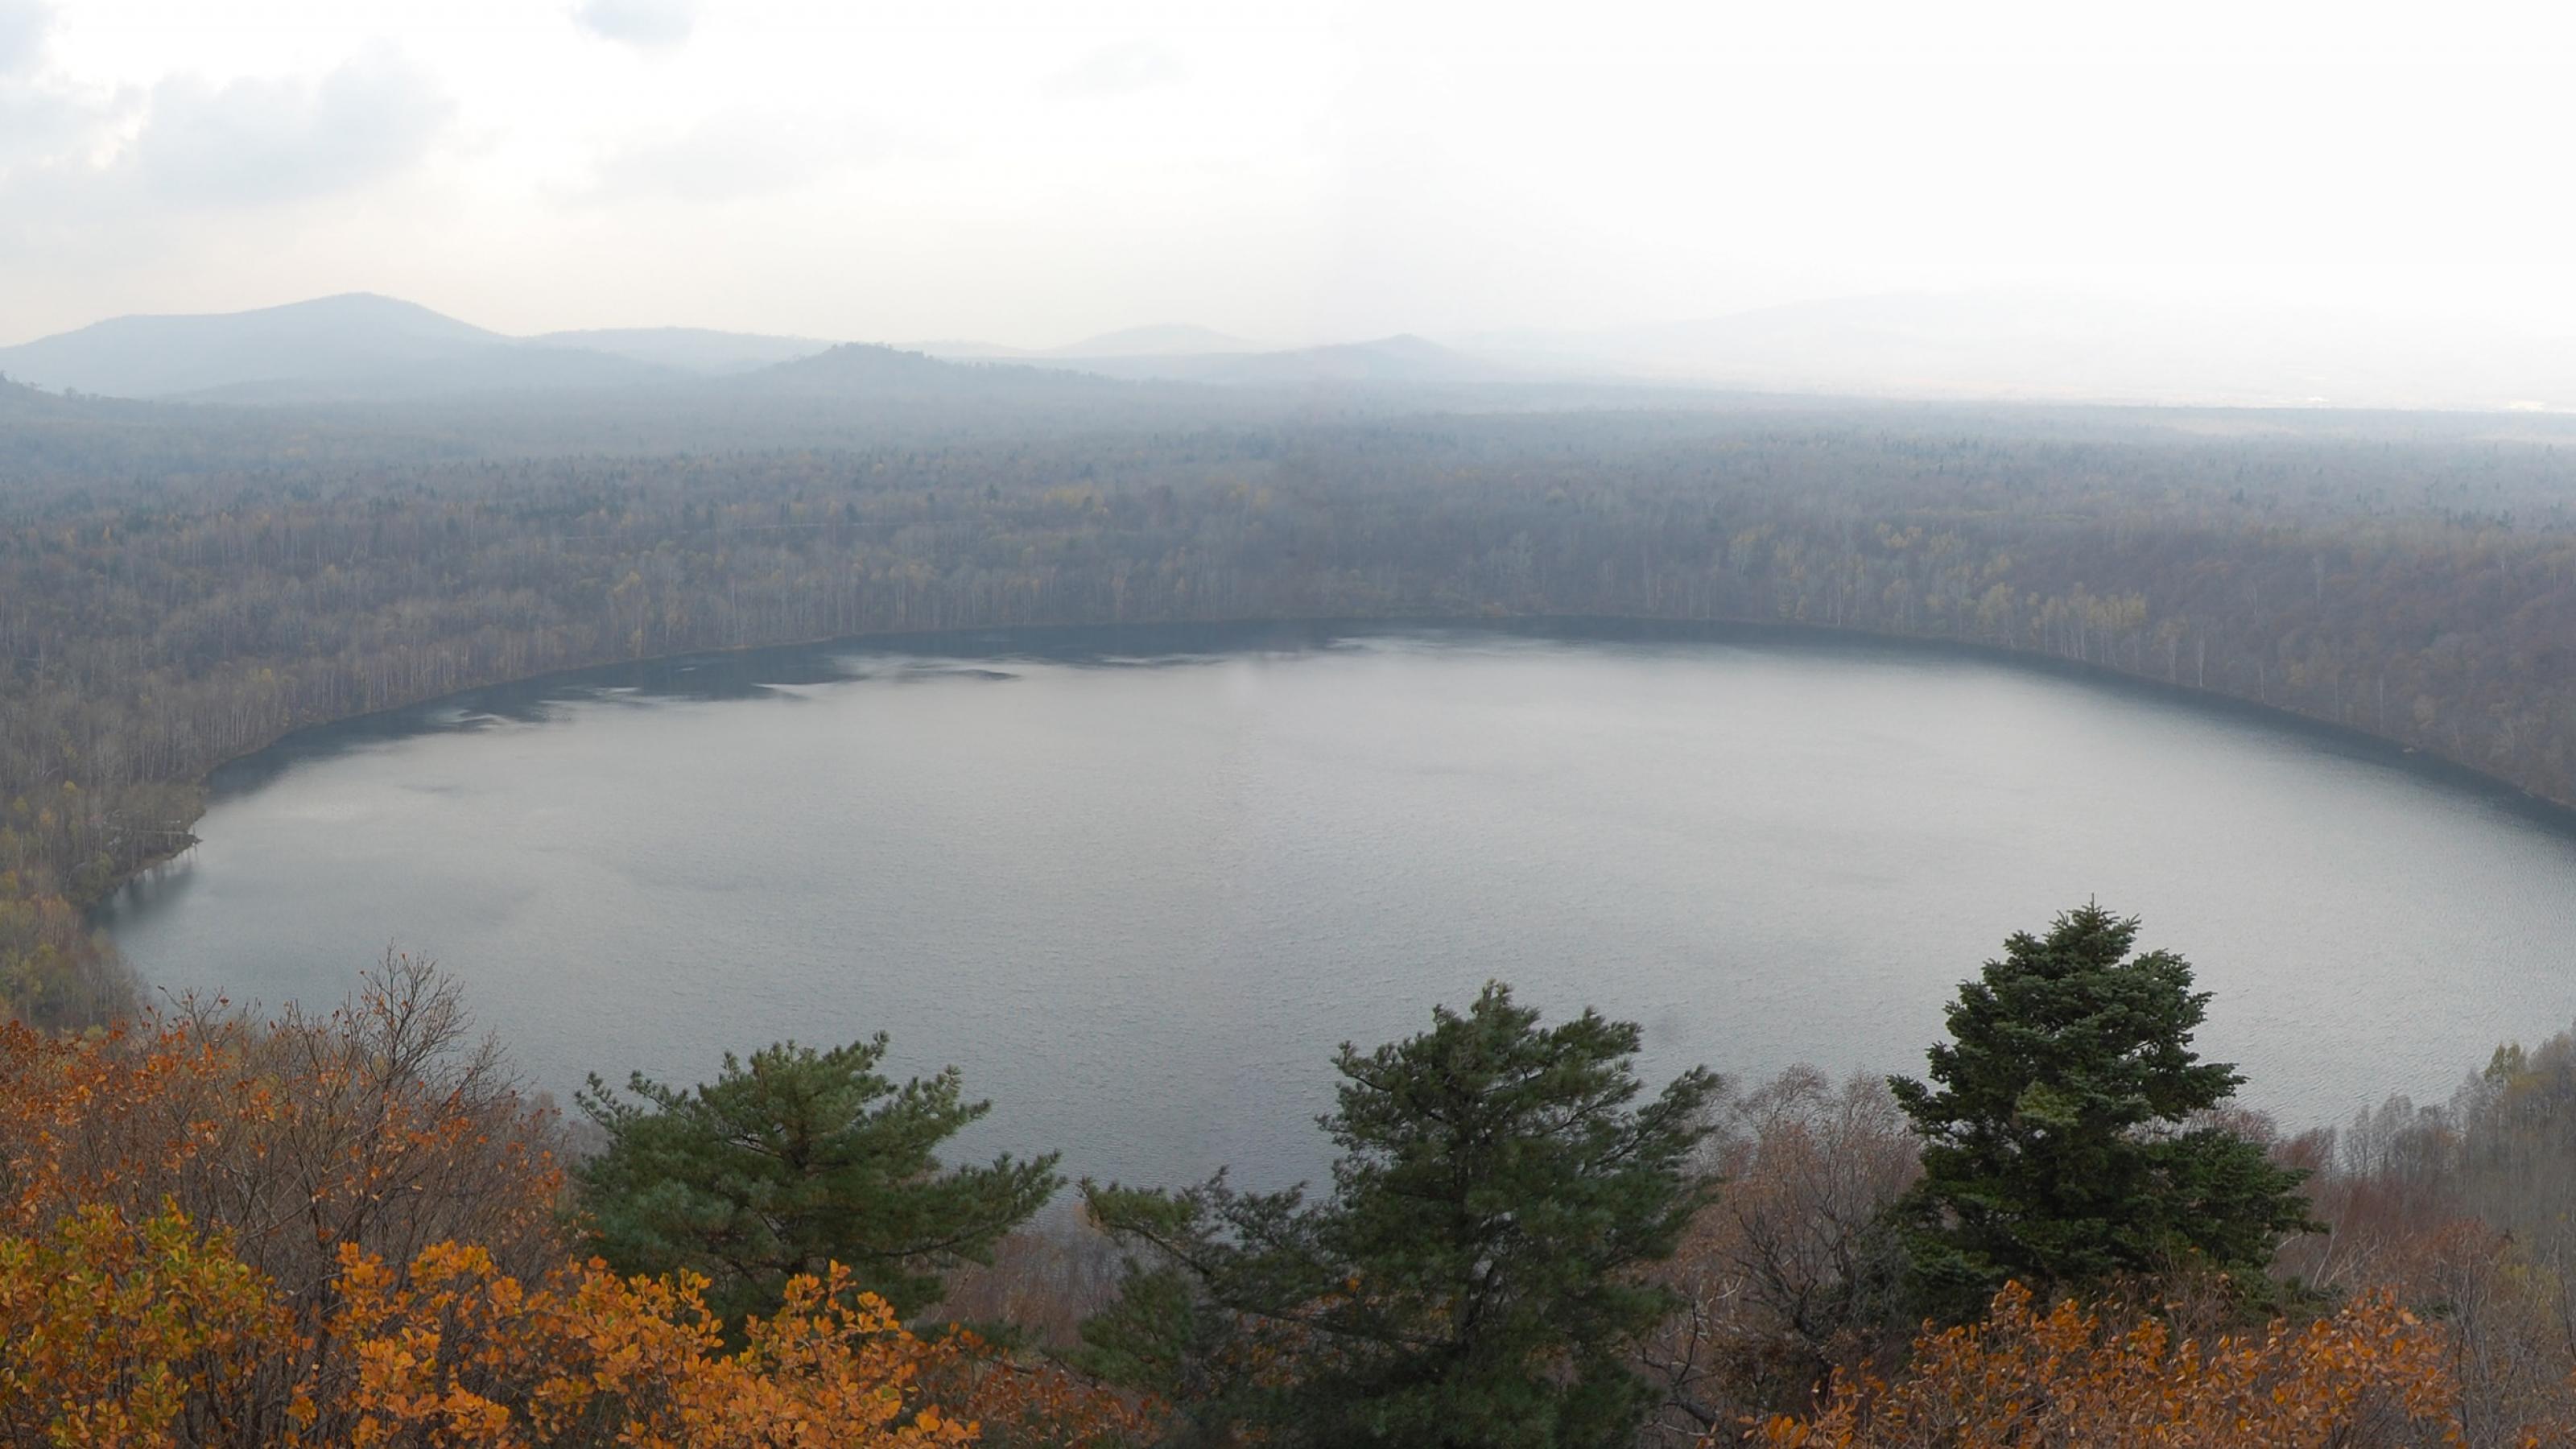 Großer runder See, ein Vulkankrater, umgeben von Wald und Hügeln.